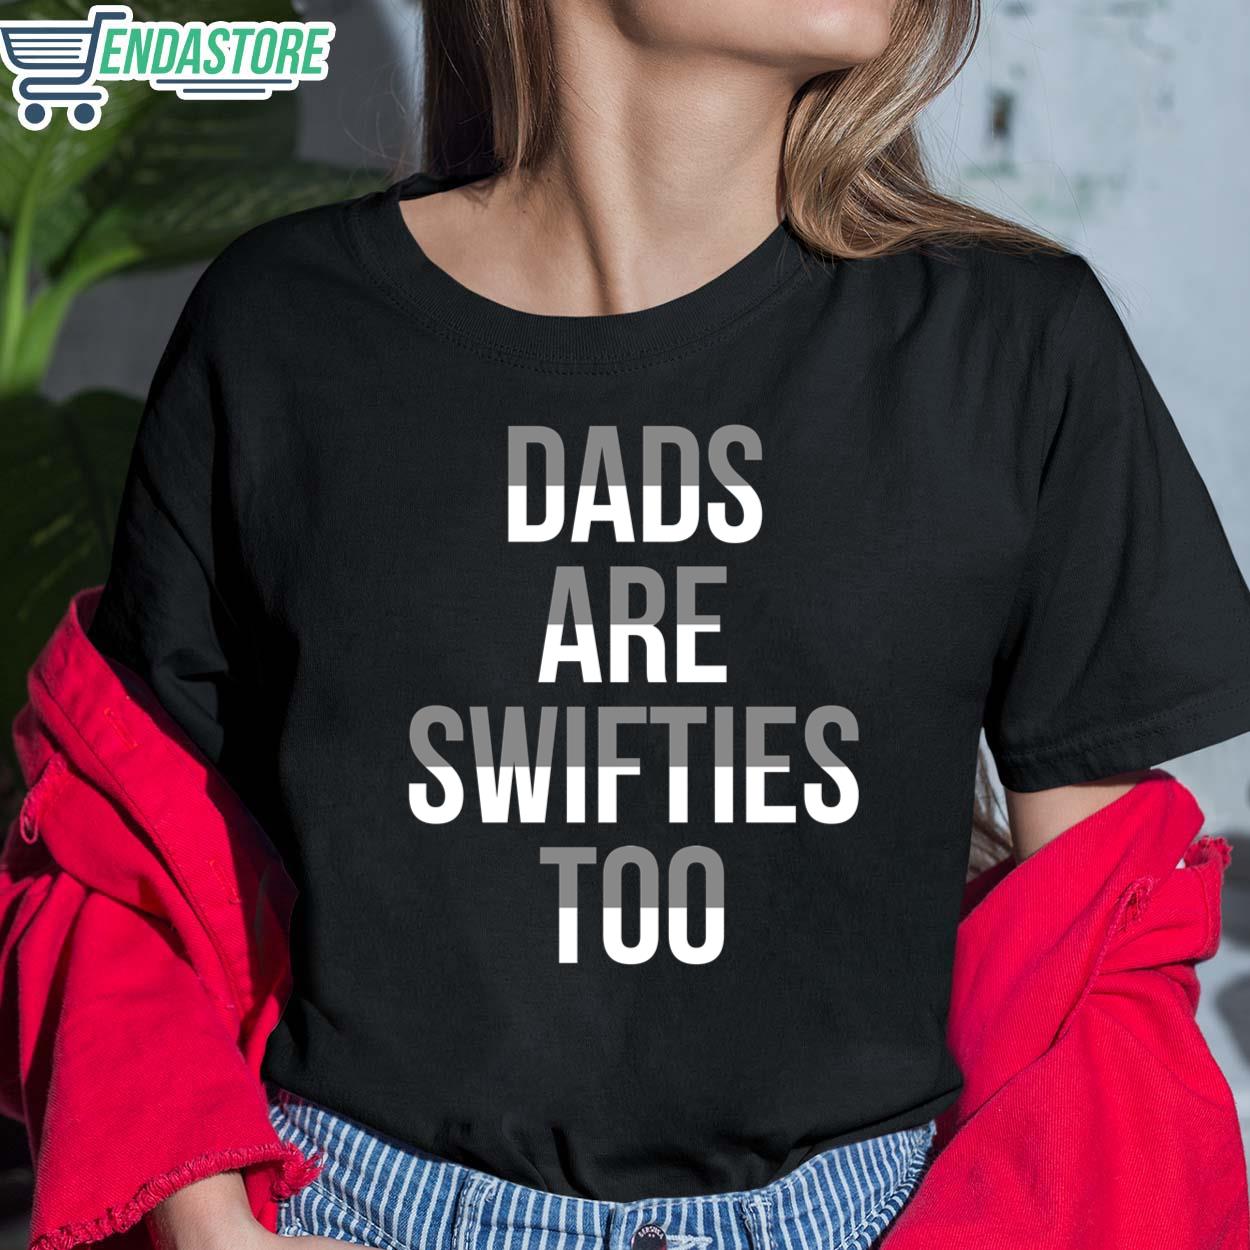 Dads Are Swifties Too Shirt - Endastore.com